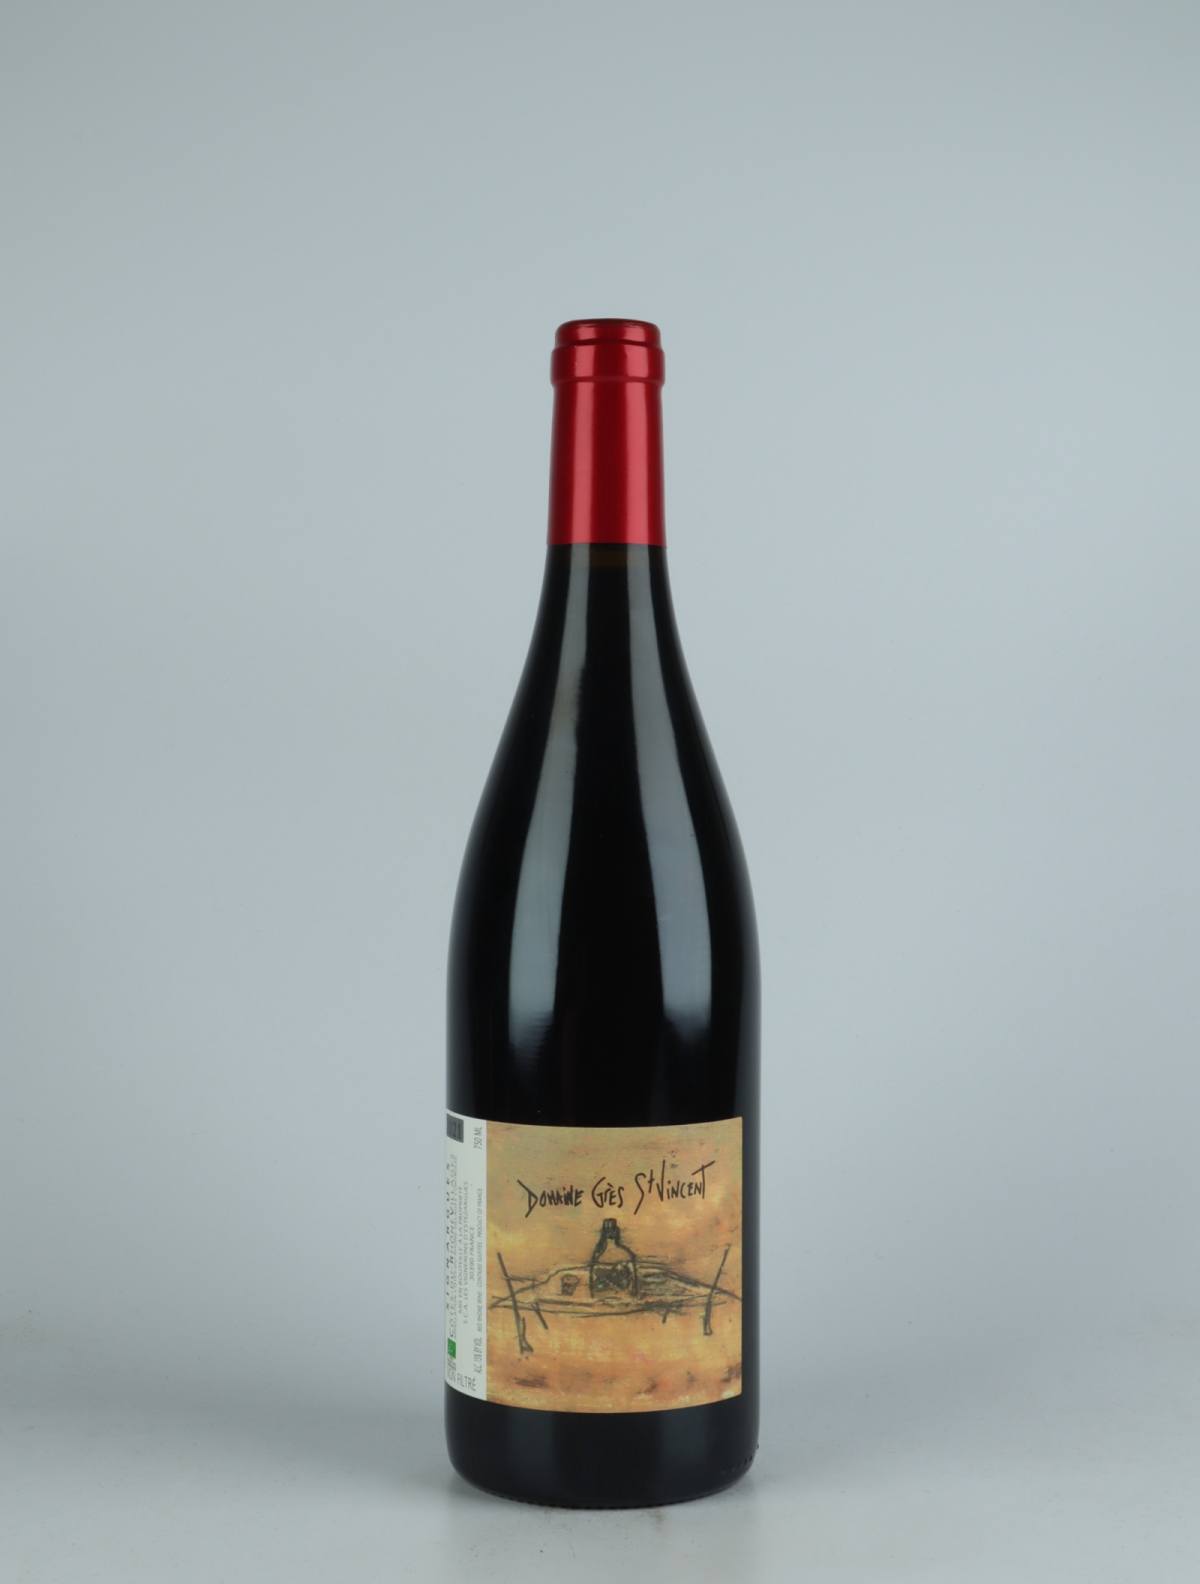 A bottle  Côtes du Rhône - Grès St Vincent Red wine from Les Vignerons d’Estézargues, Rhône in France